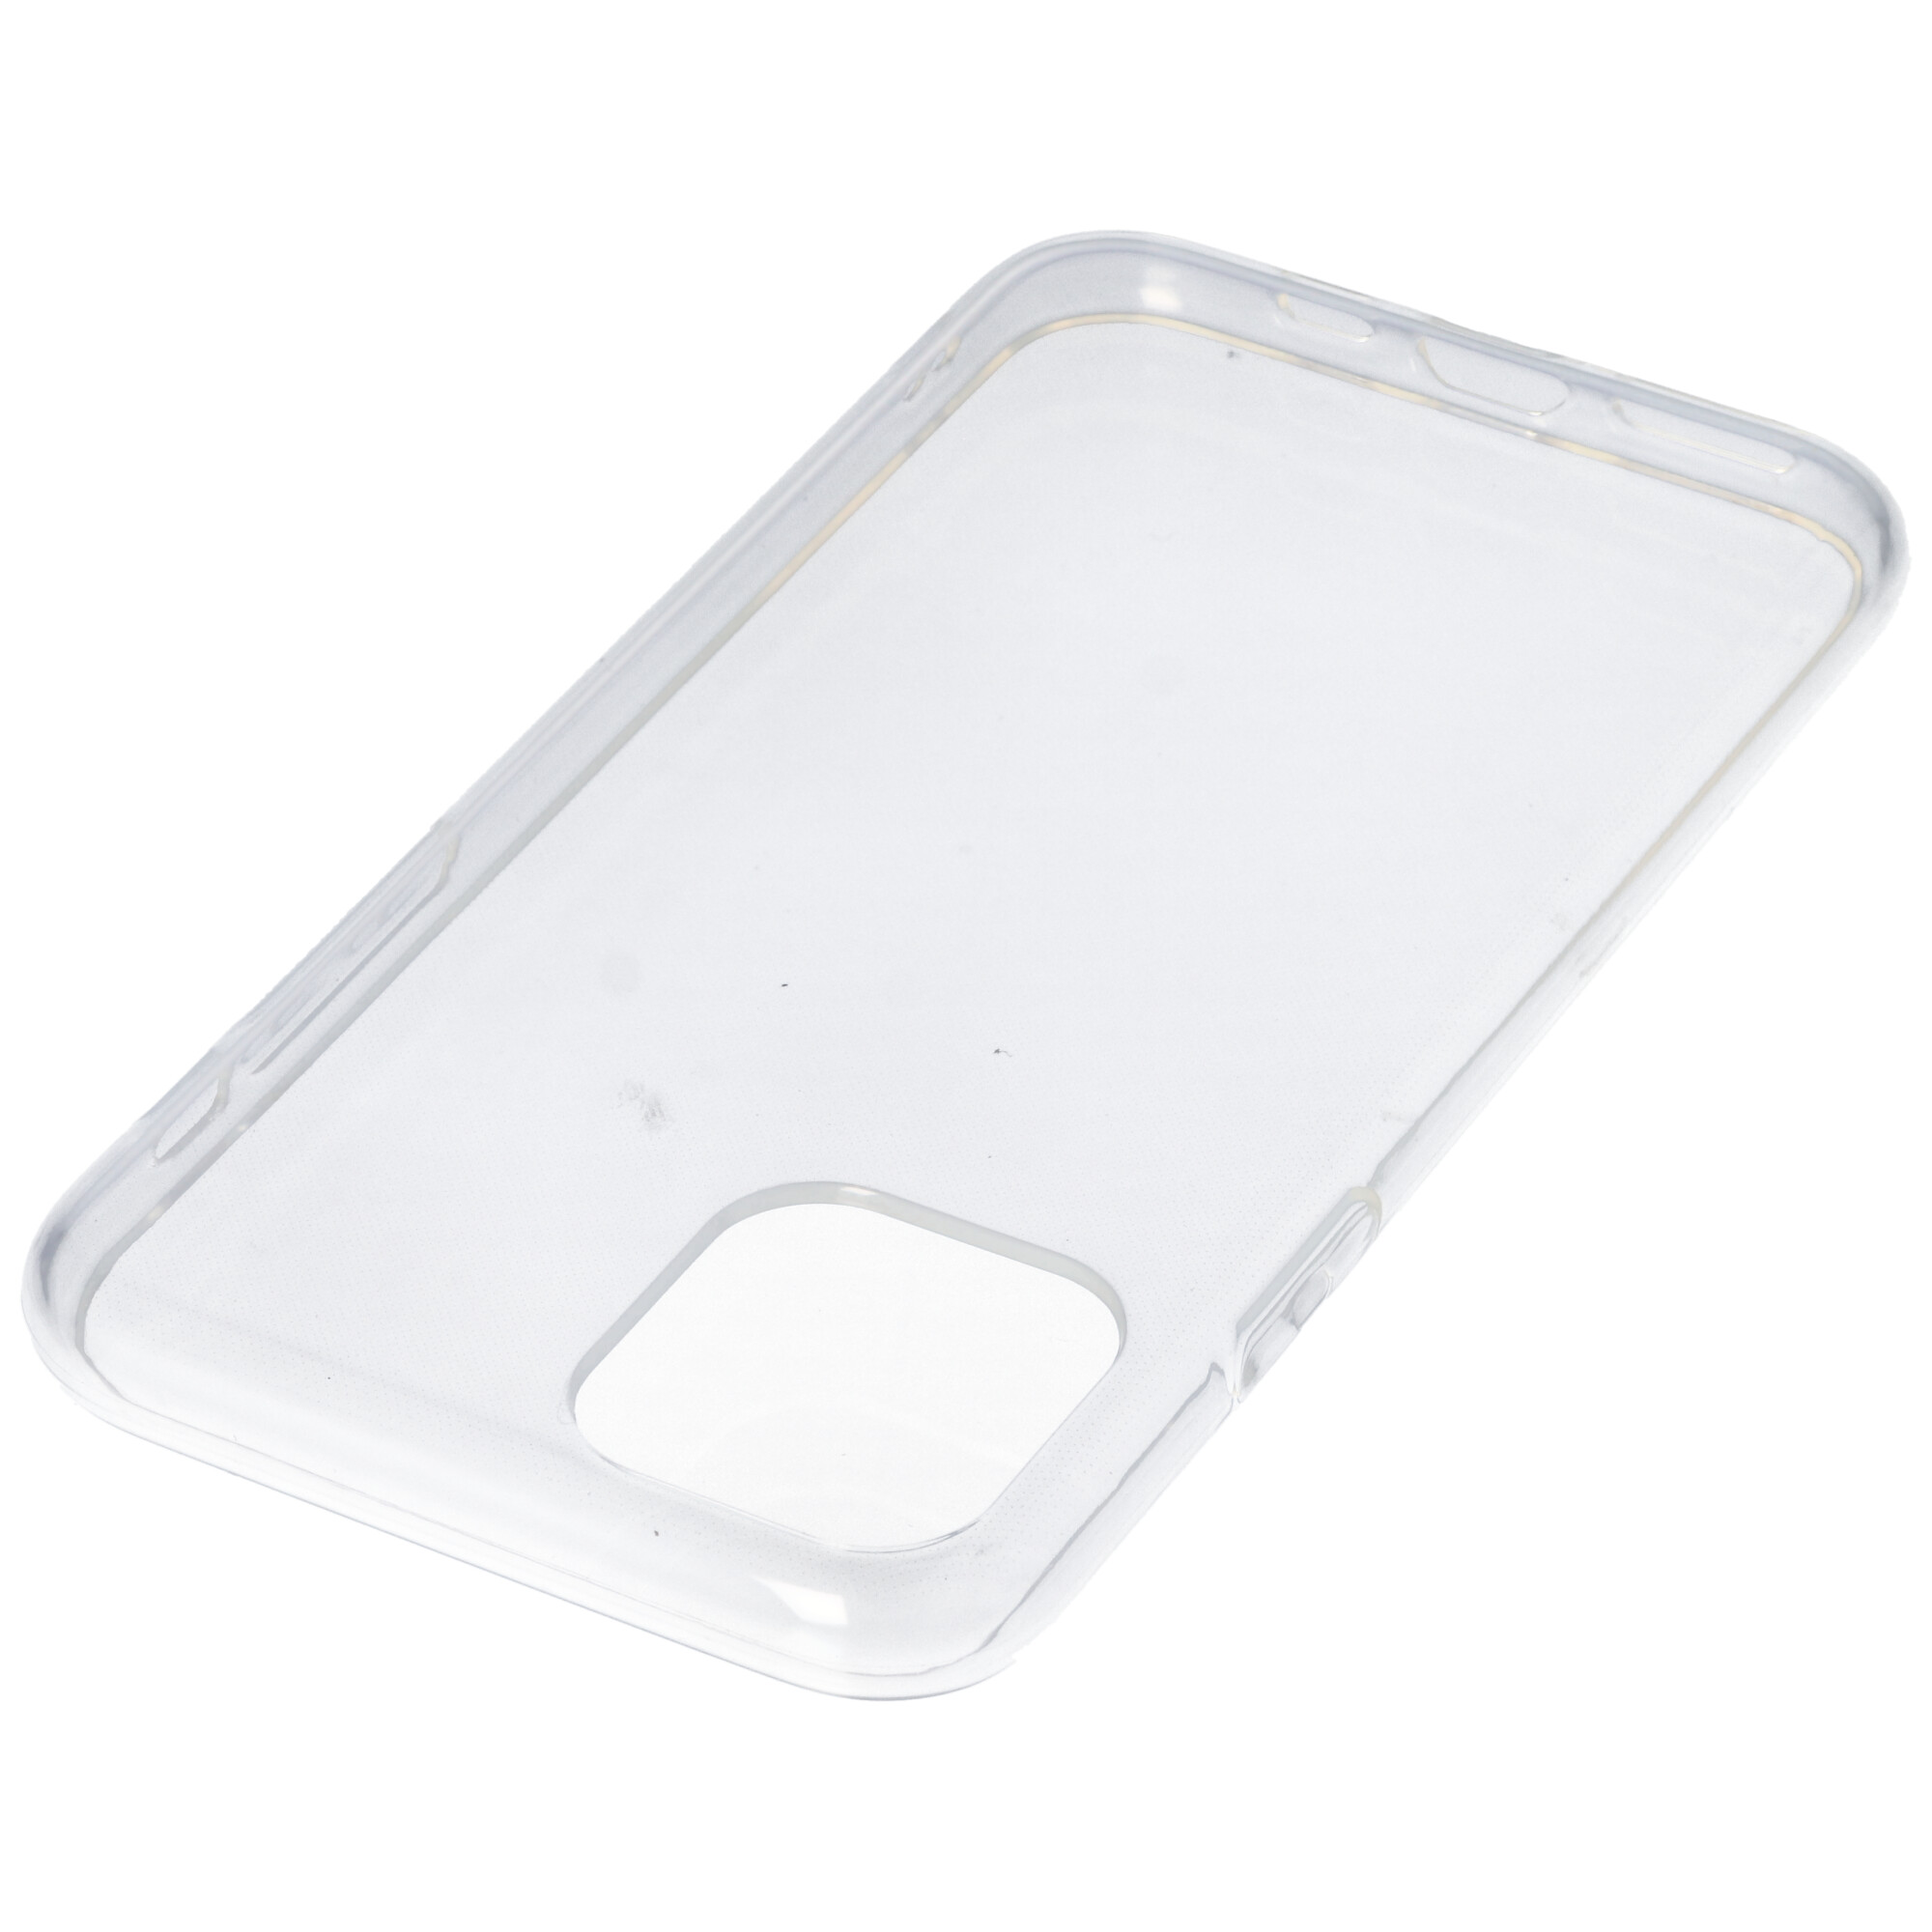 Hülle passend für Apple iPhone 11 Pro - transparente Schutzhülle, Anti-Gelb Luftkissen Fallschutz Silikon Handyhülle robustes TPU Case